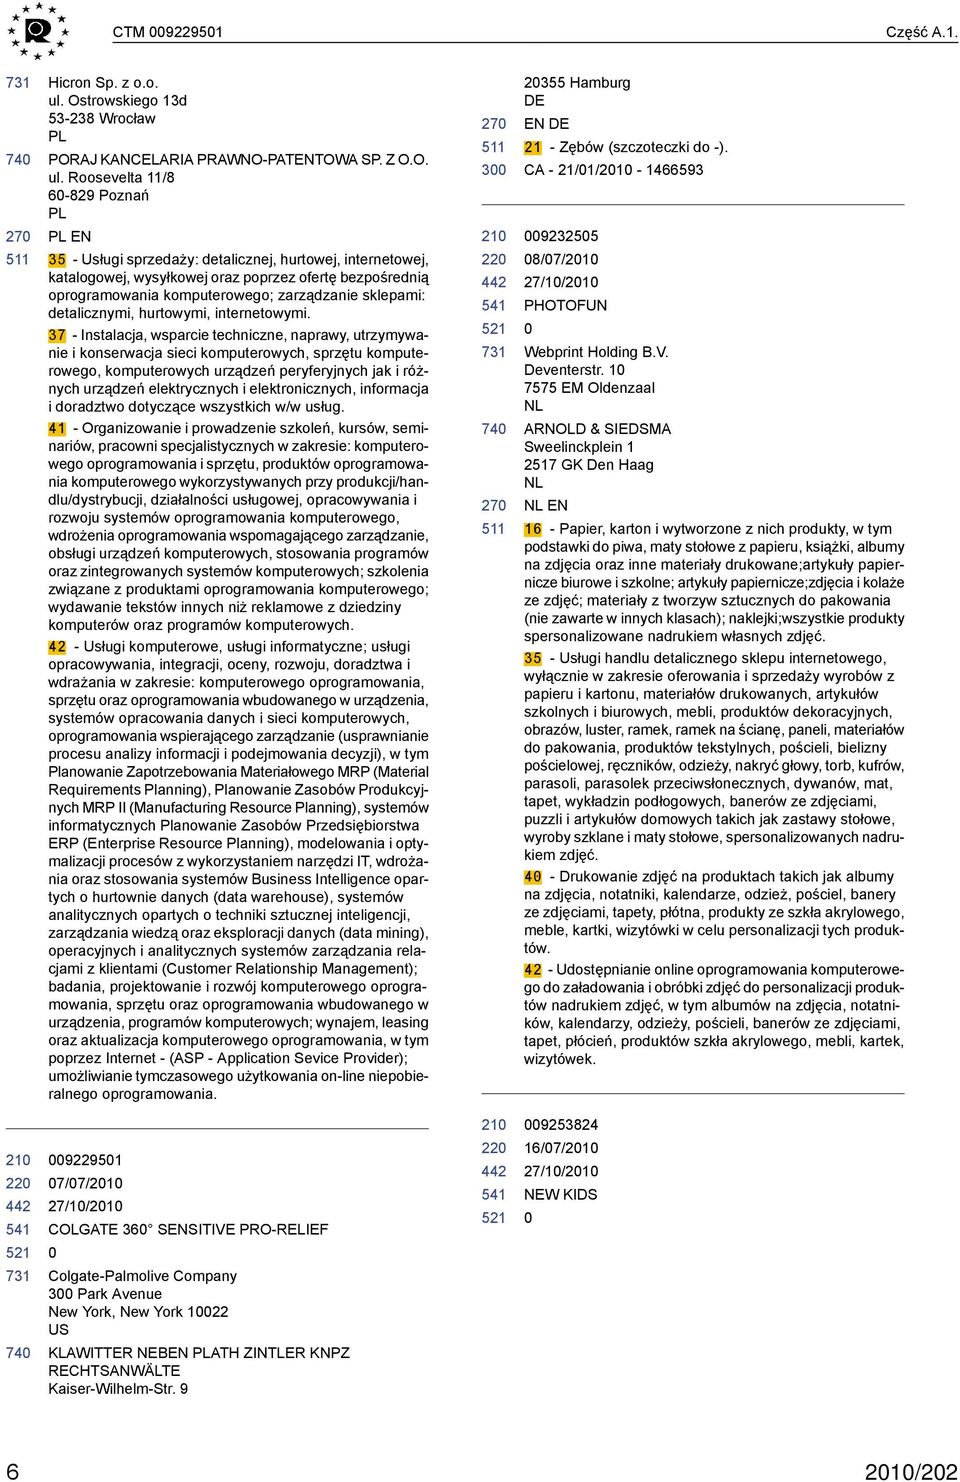 Roosevelta 11/8 6-829 Poznań PL PL EN 35 - Usługi sprzedaży: detalicznej, hurtowej, internetowej, katalogowej, wysyłkowej oraz poprzez ofertę bezpośrednią oprogramowania komputerowego; zarządzanie